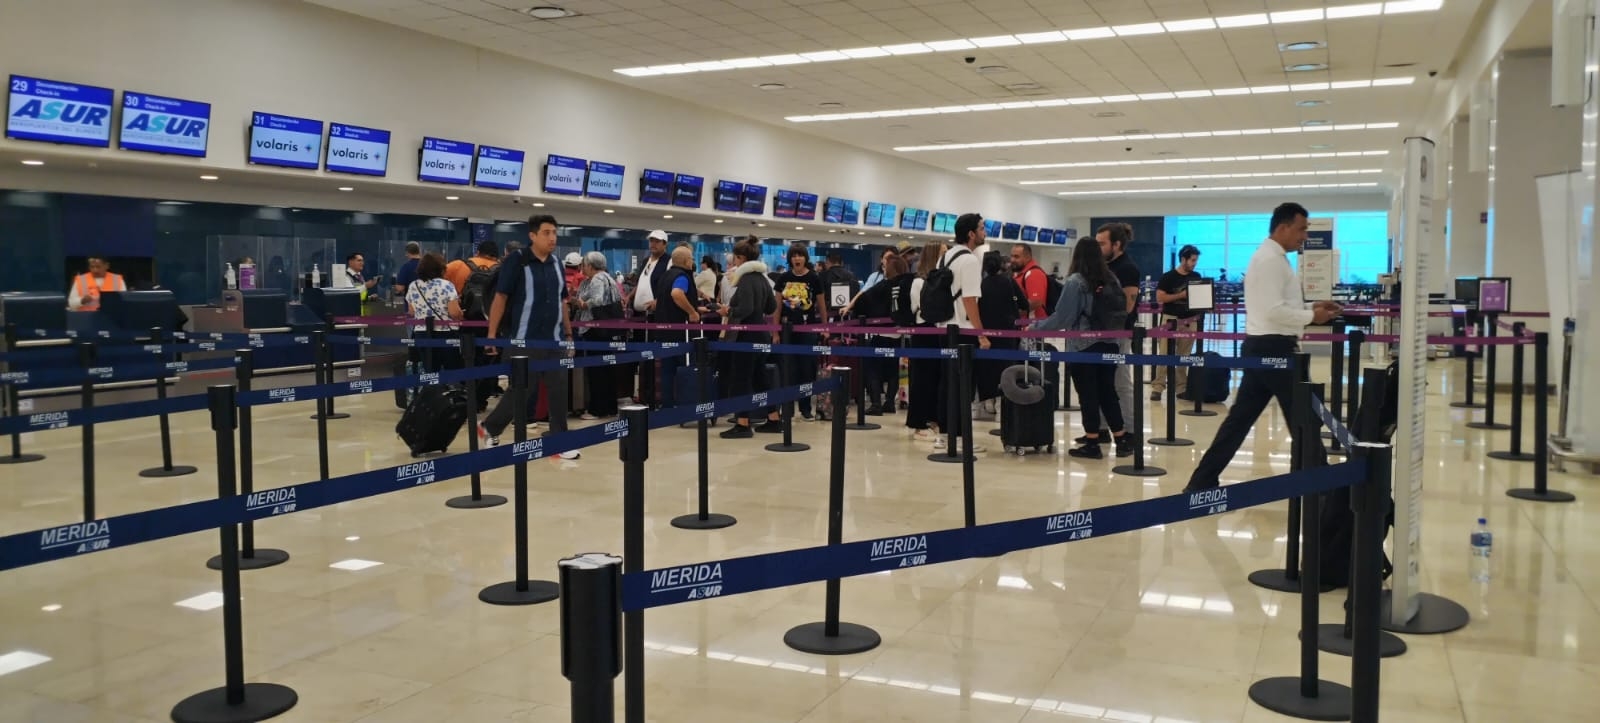 Aeropuerto de Mérida opera con vuelos adelantados por casi media hora